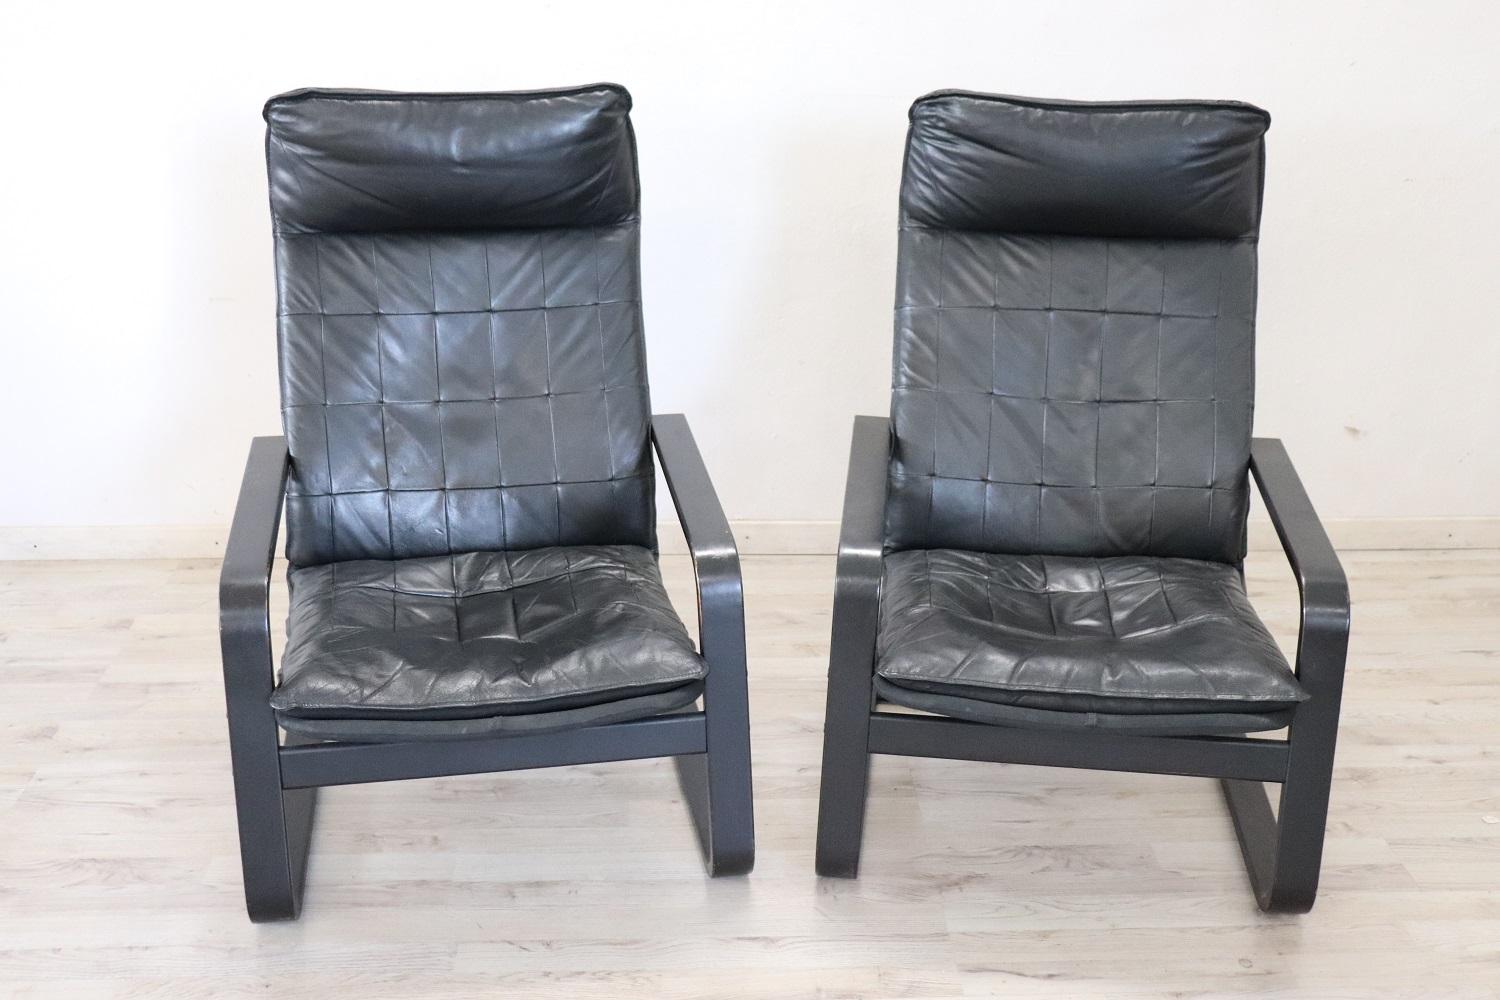 Paar Sessel italienisches Design 1970er Jahre, das Holz ist schwarz gefärbt, in schwarzem Leder bezogen. Schauen Sie sich alle Bilder, gibt es einige Anzeichen von Verschleiß.